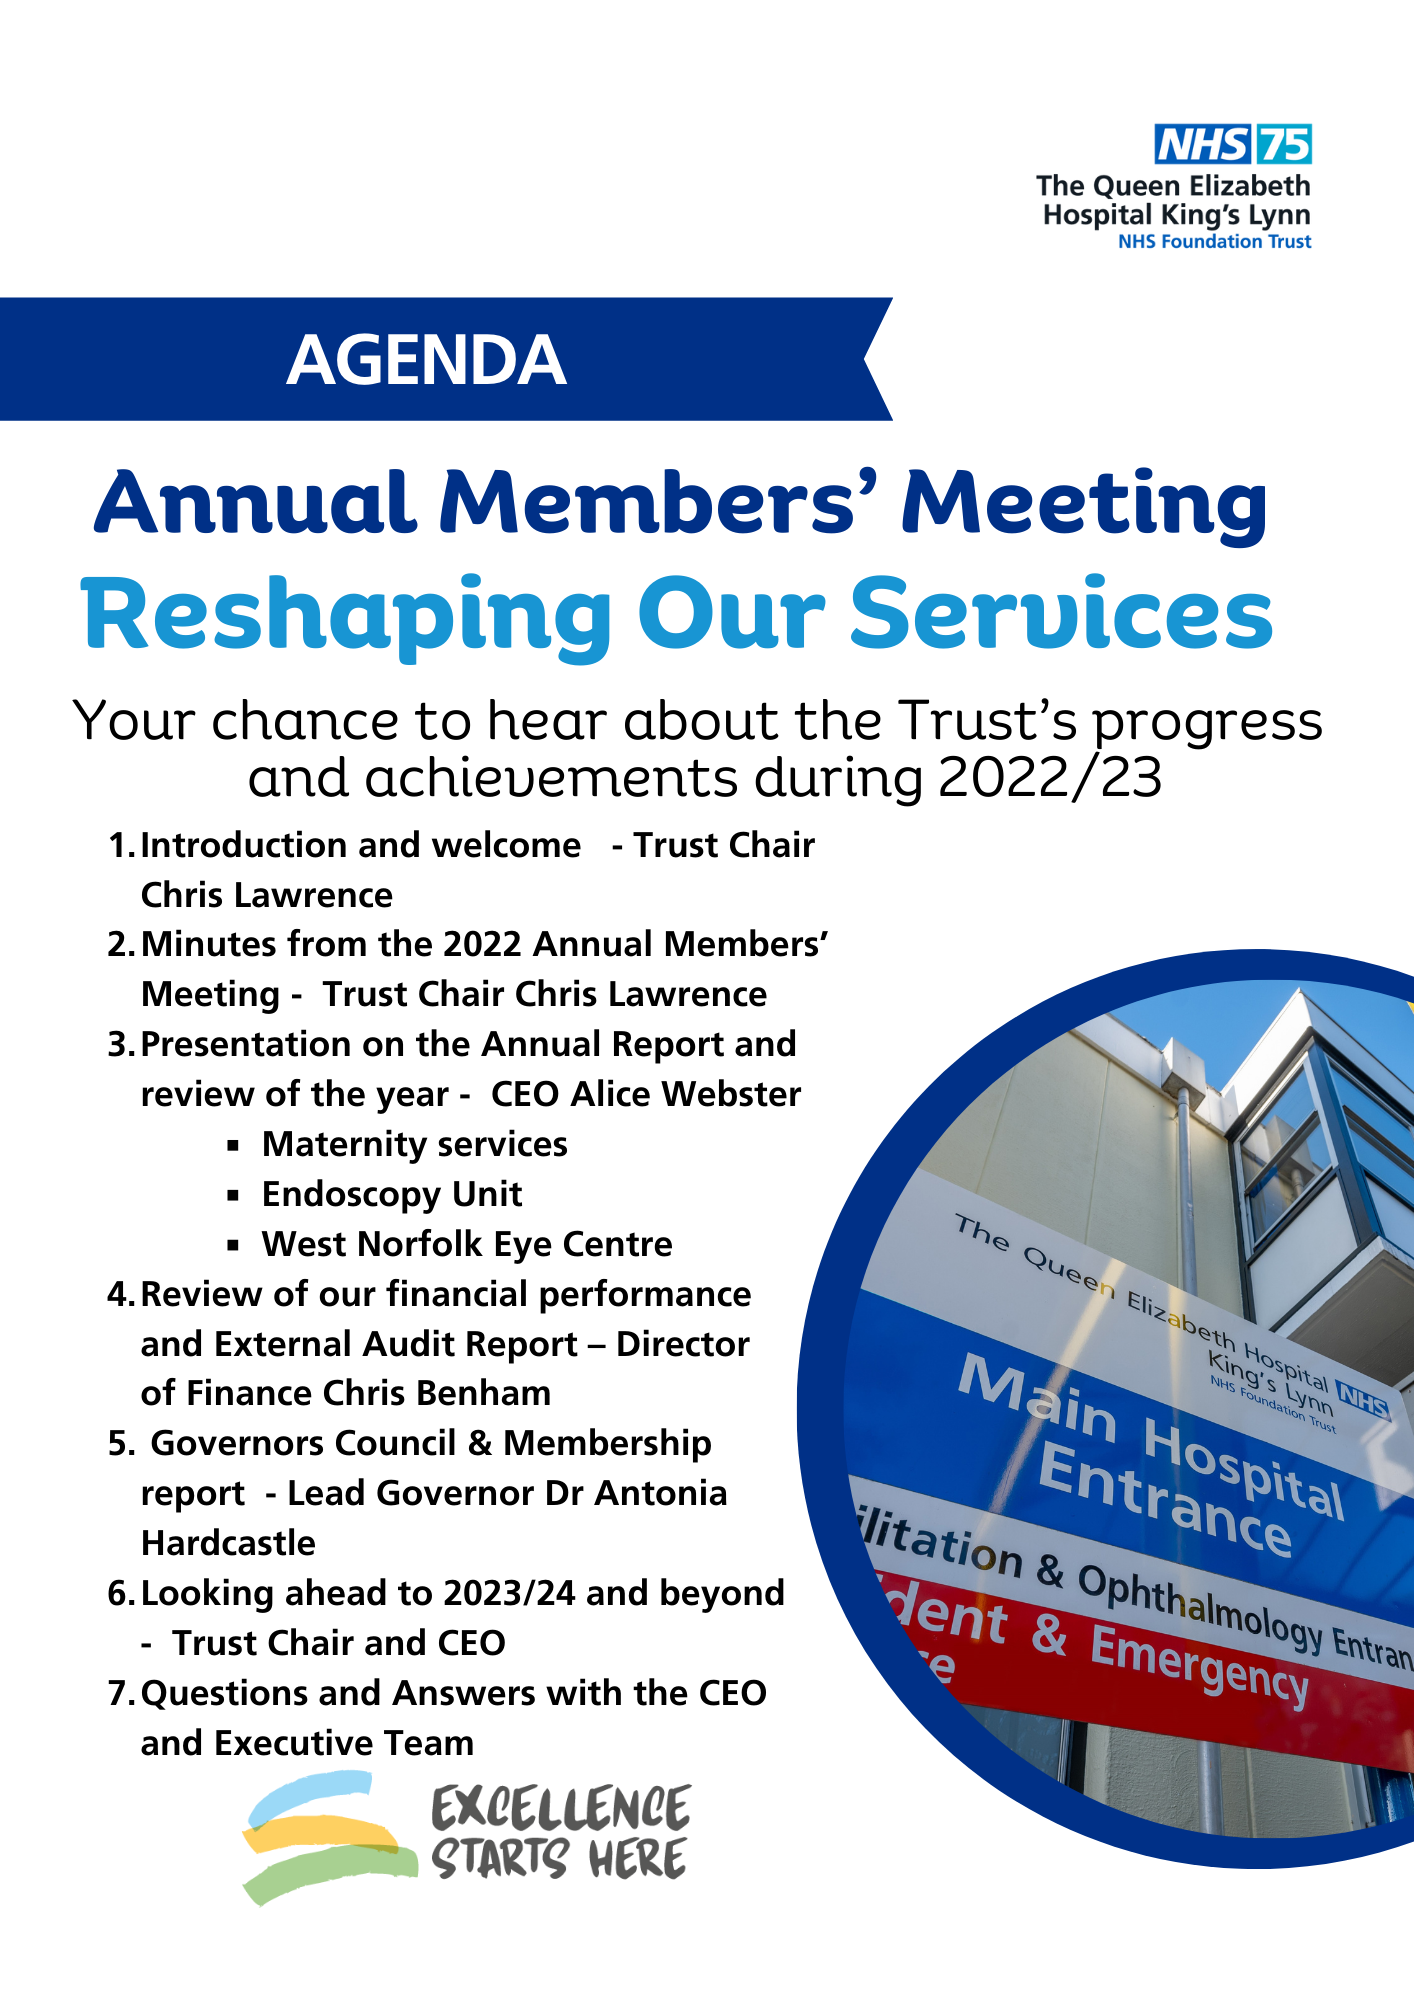 QEH's 2023 AMM agenda